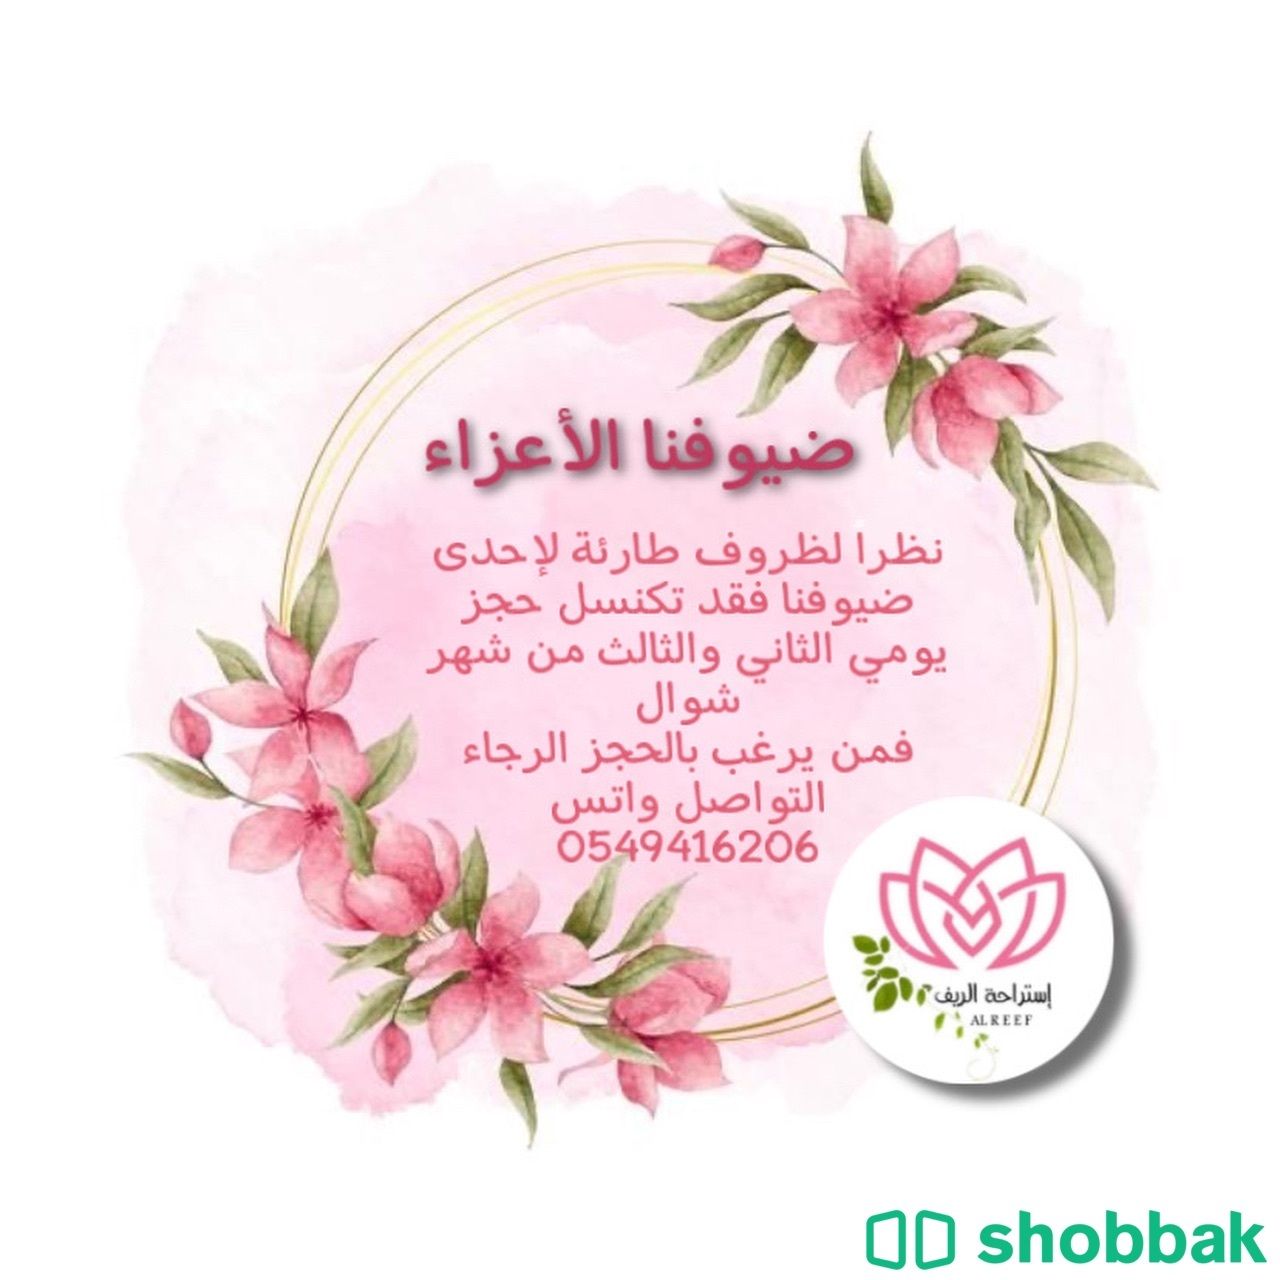 استراحة الريف متوفر يومي الثاني والثالث من العيد .. Shobbak Saudi Arabia